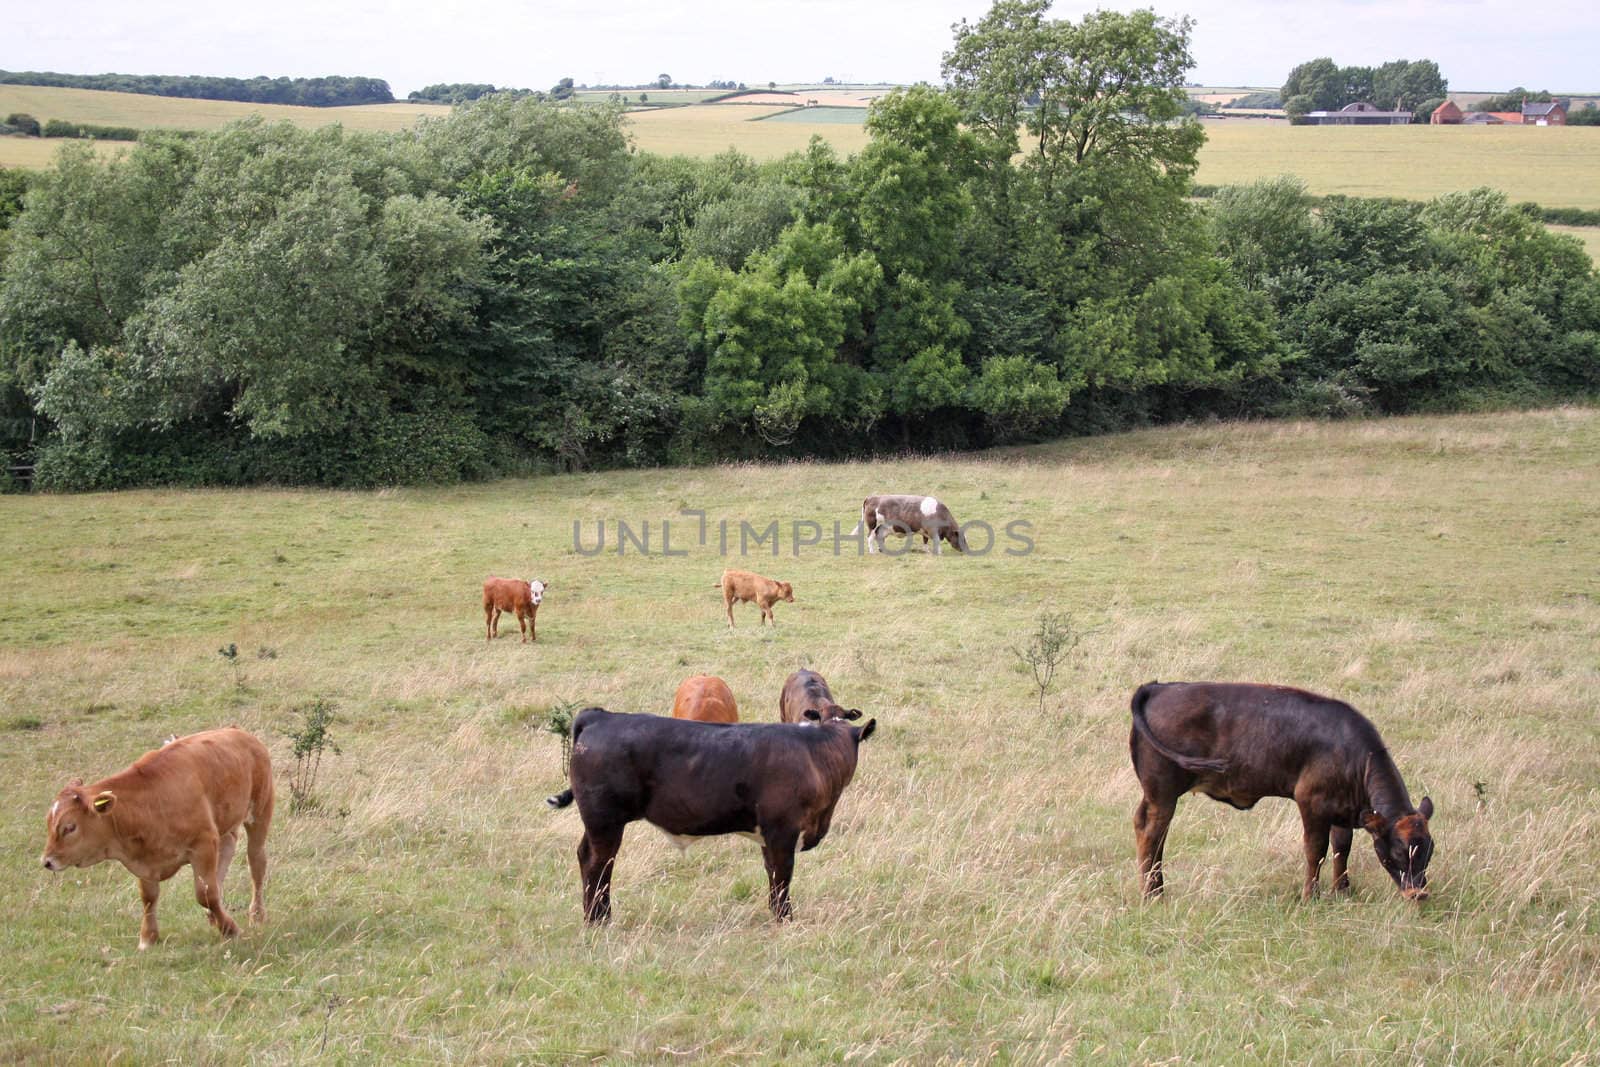 cows grazing in field by lizapixels